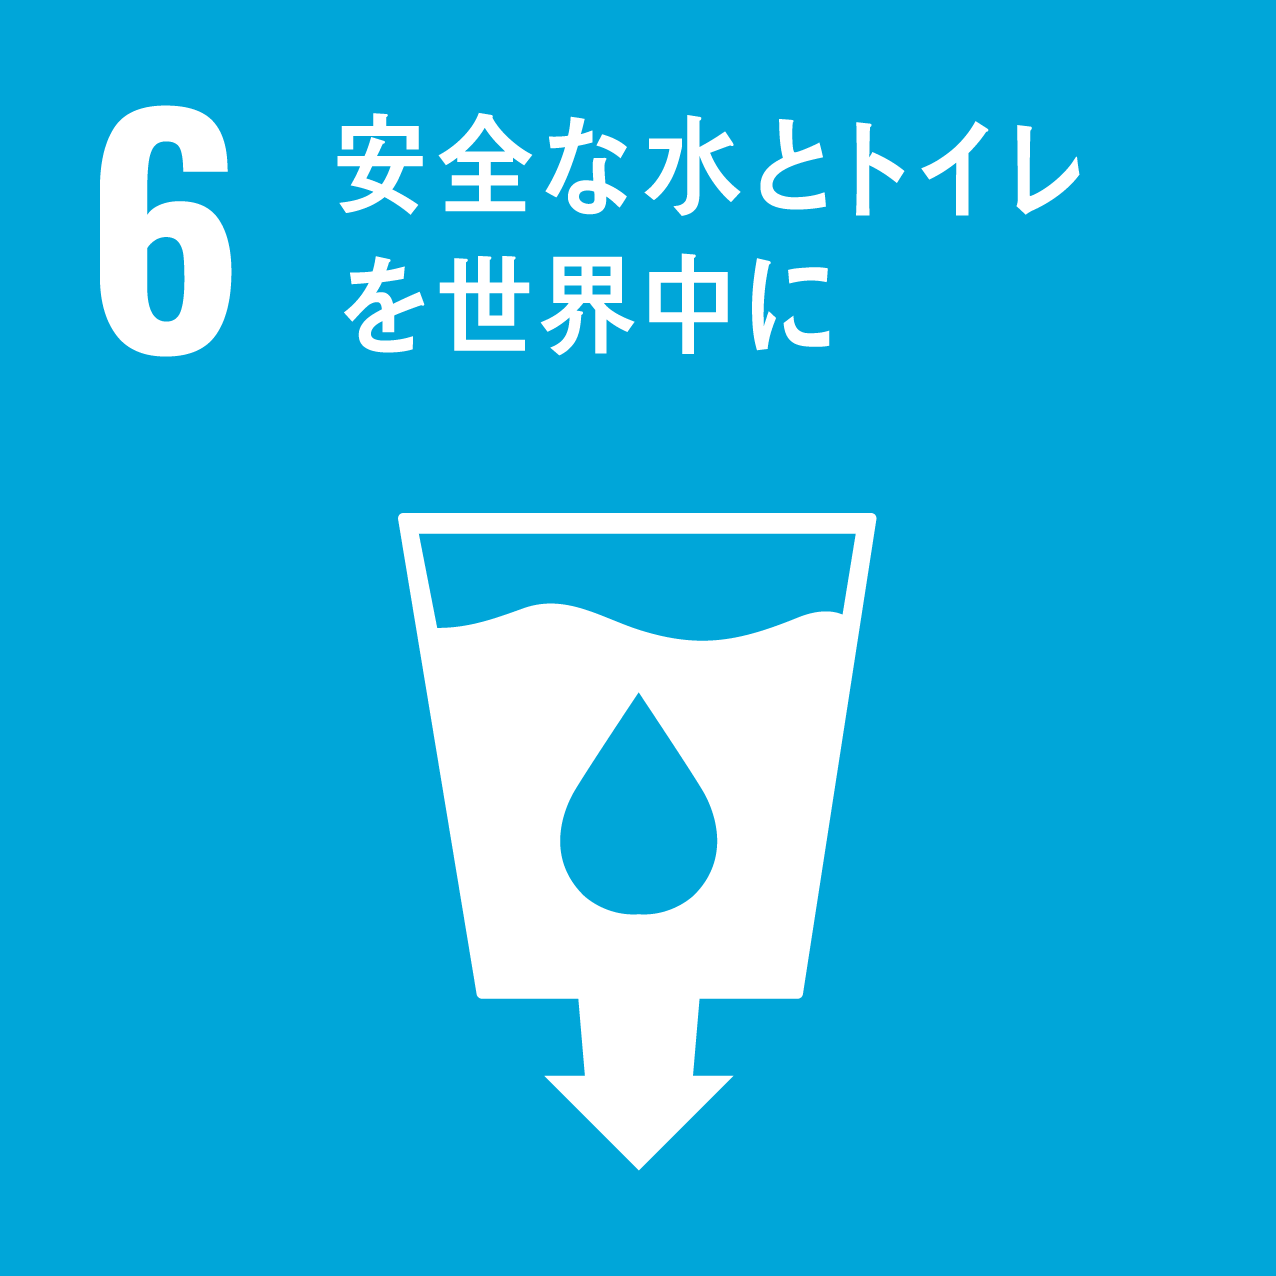 SDG6